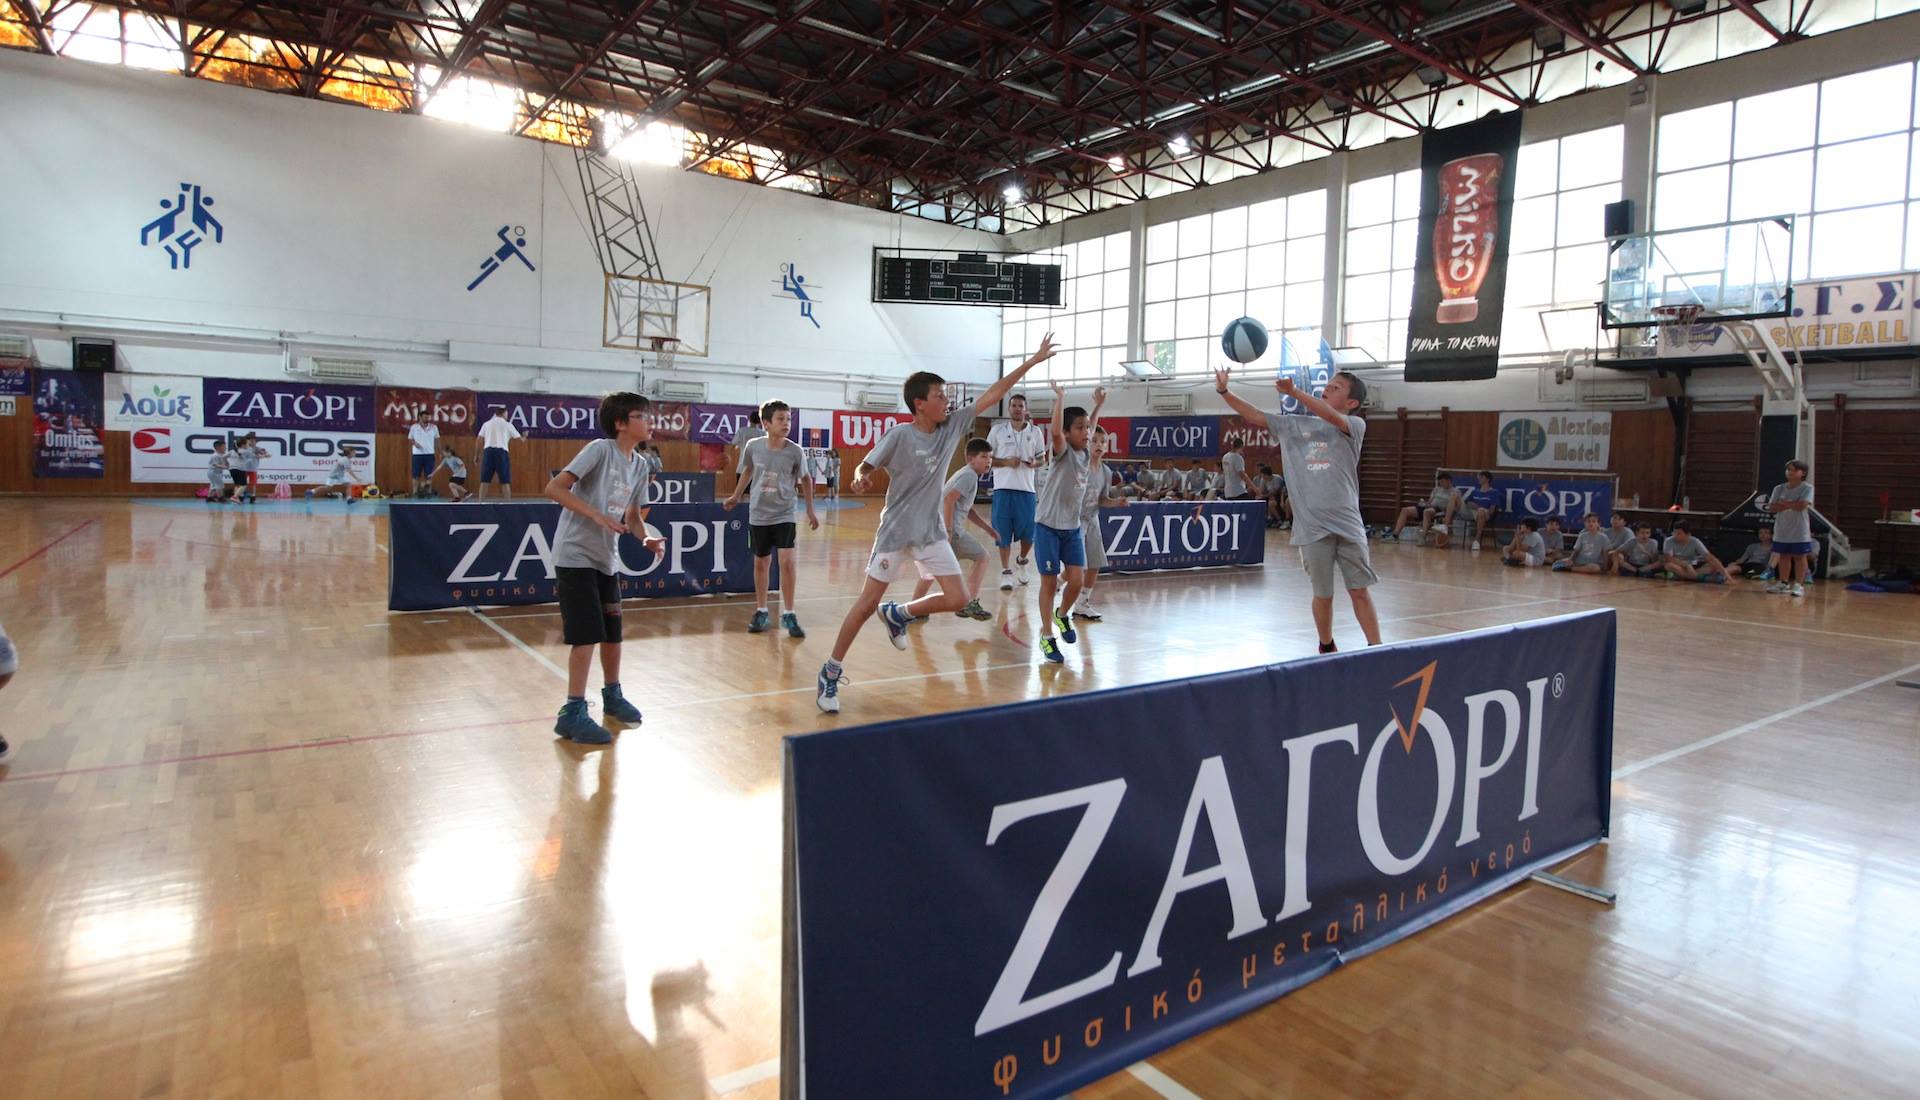 24ο Zagori Basketball Camp & Tournament